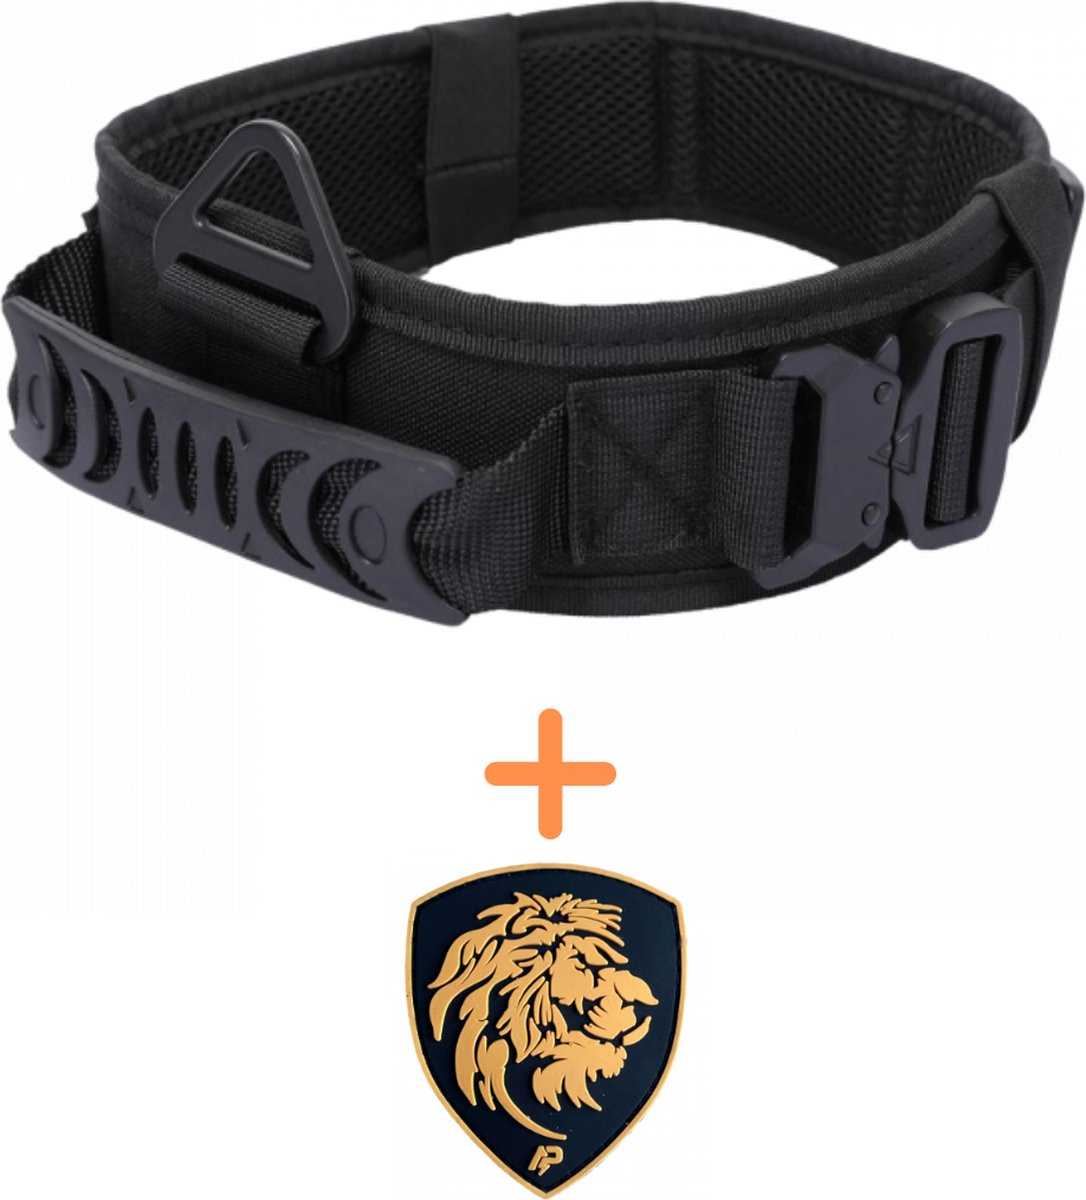 Always Prepared © Pro K9 Halsband + Nederlandse leeuw patch - Hals 45-75 CM - Hondenhalsband - geschikt voor elke hondenriem - voor middel en grote honden - One Size Zwart - Always Prepared